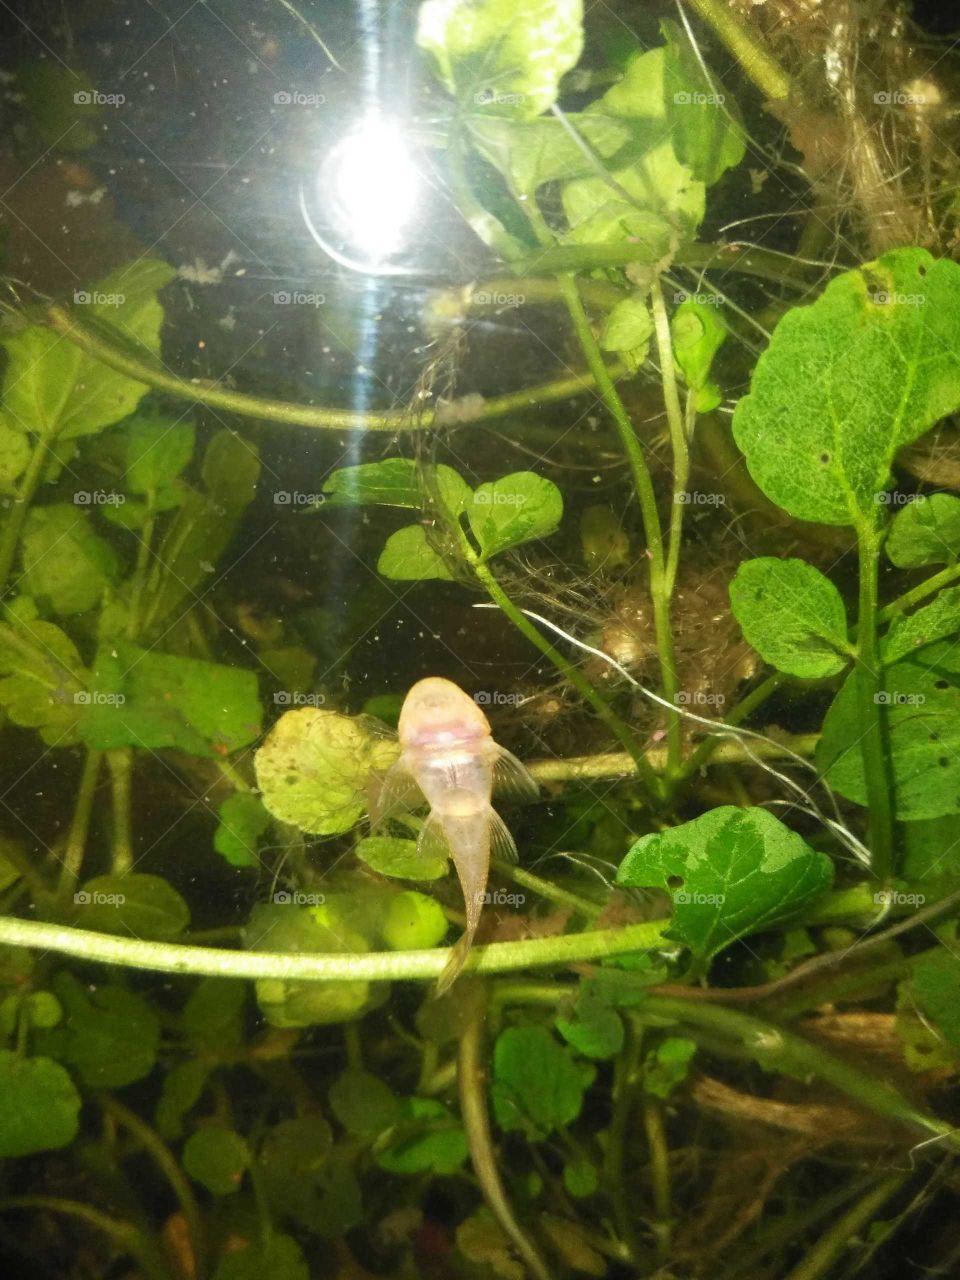 Baby sucker fish!